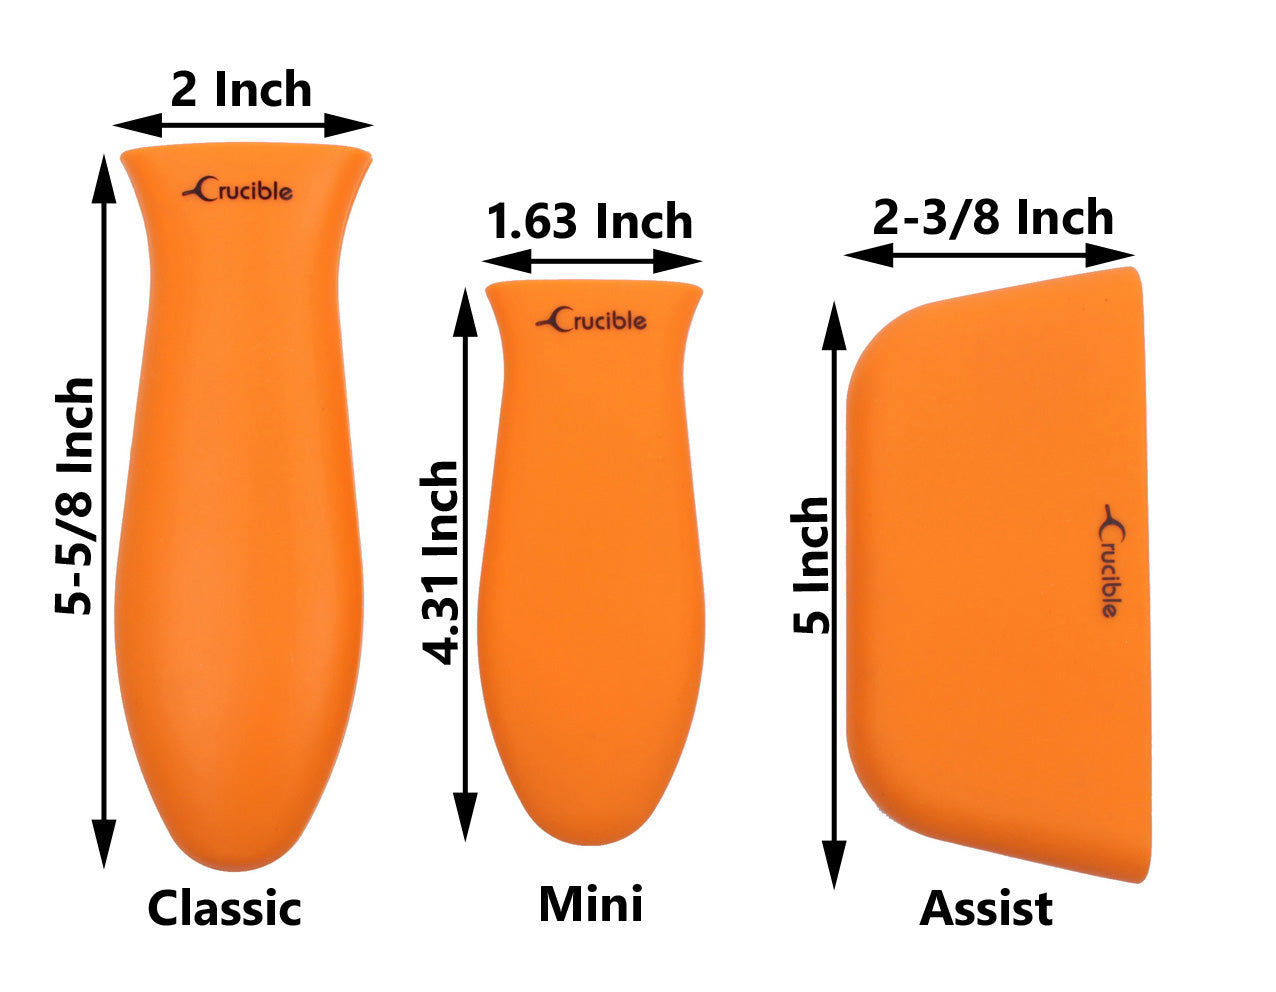 Suporte de alça quente de silicone, pegadores de panela (mistura de 3 pacotes laranja), punho de manga, capa de alça